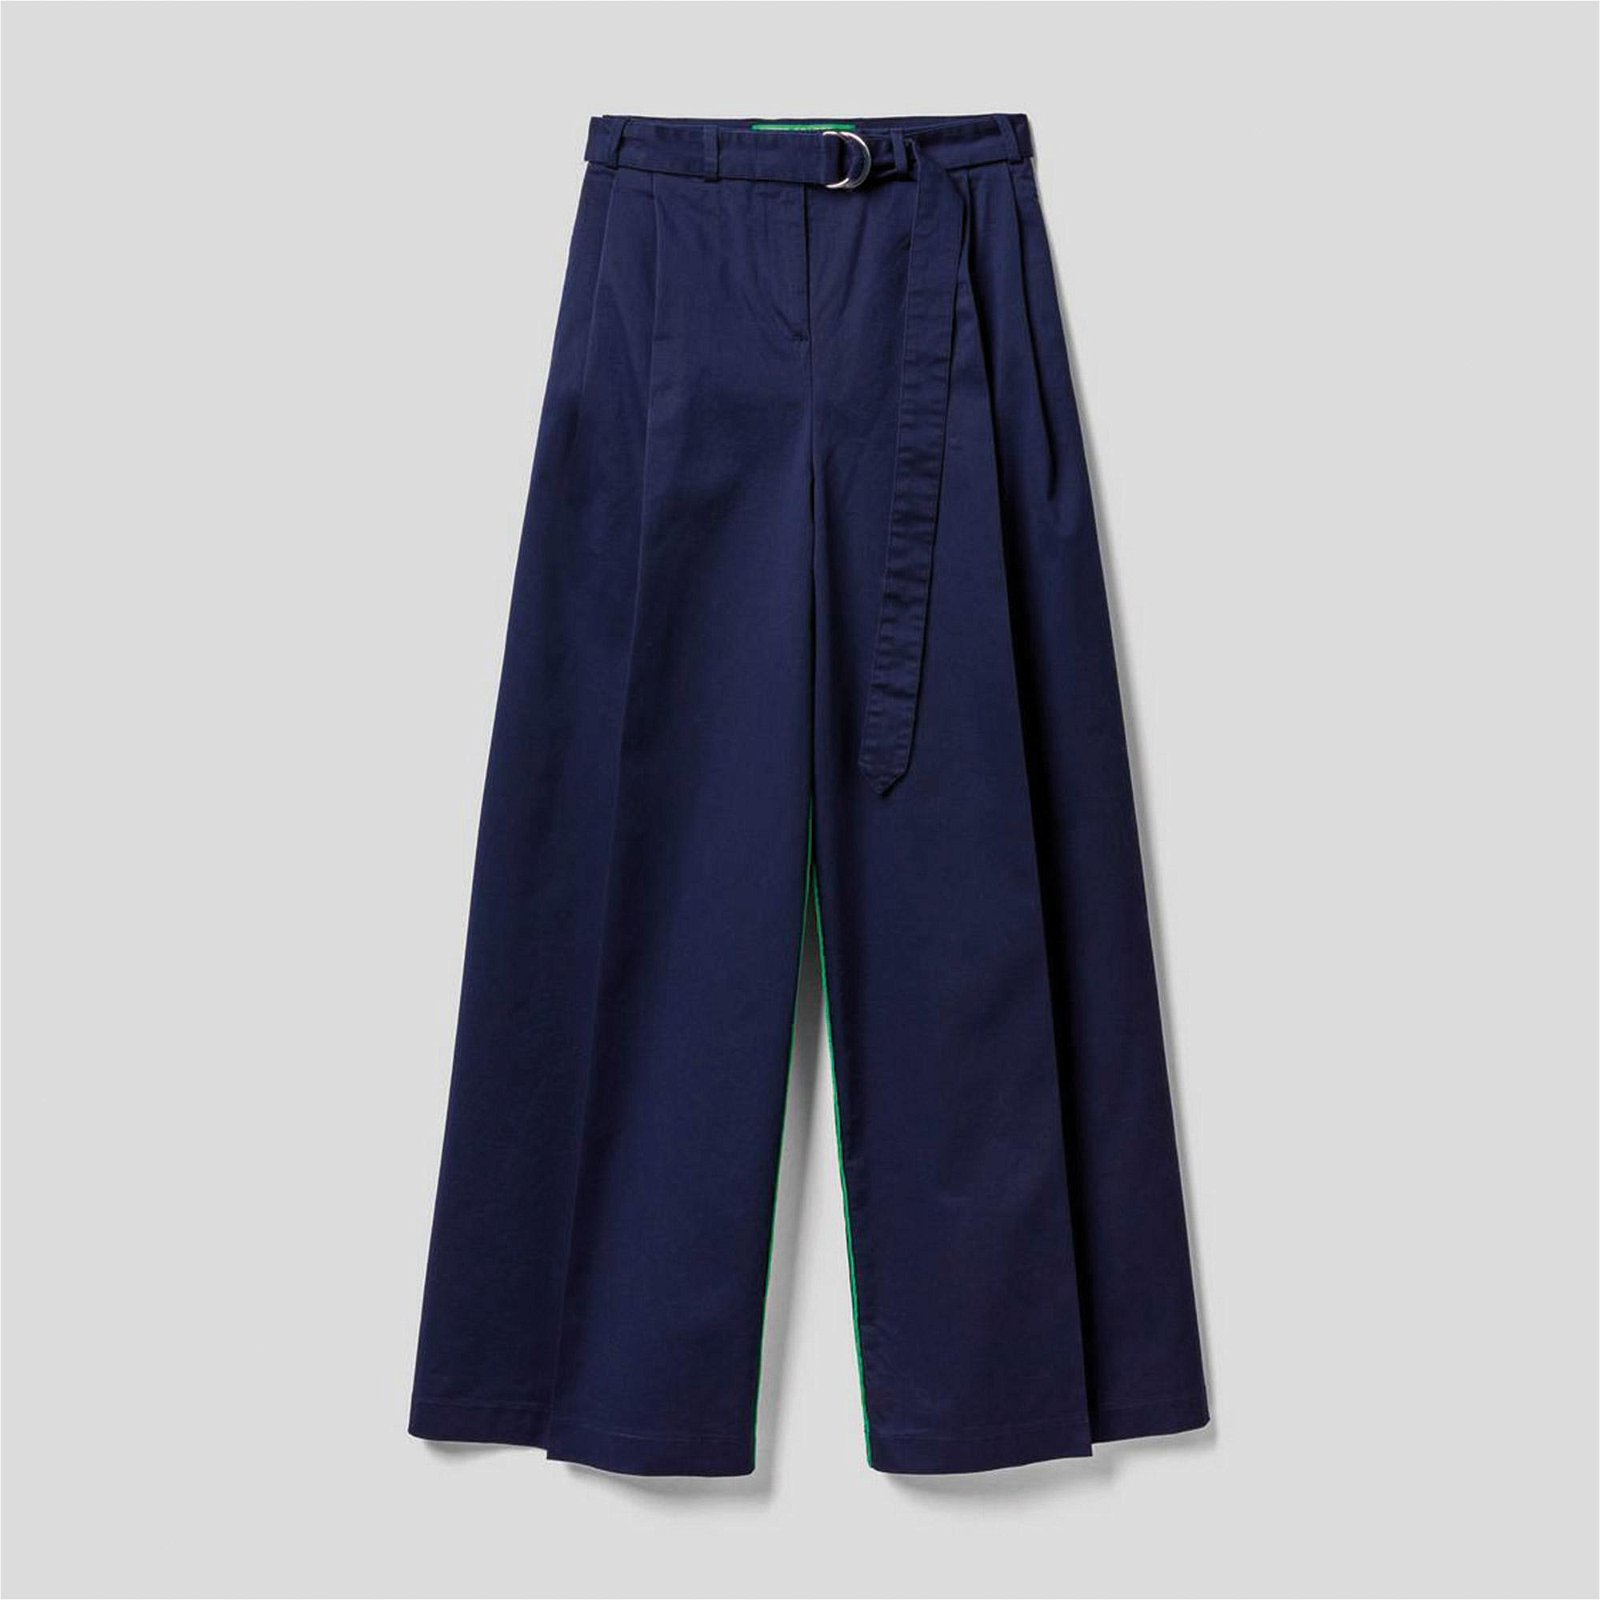 Benetton JCCXUCB Kemer Detaylı Geniş Kesim Kadın Lacivert Pantolon